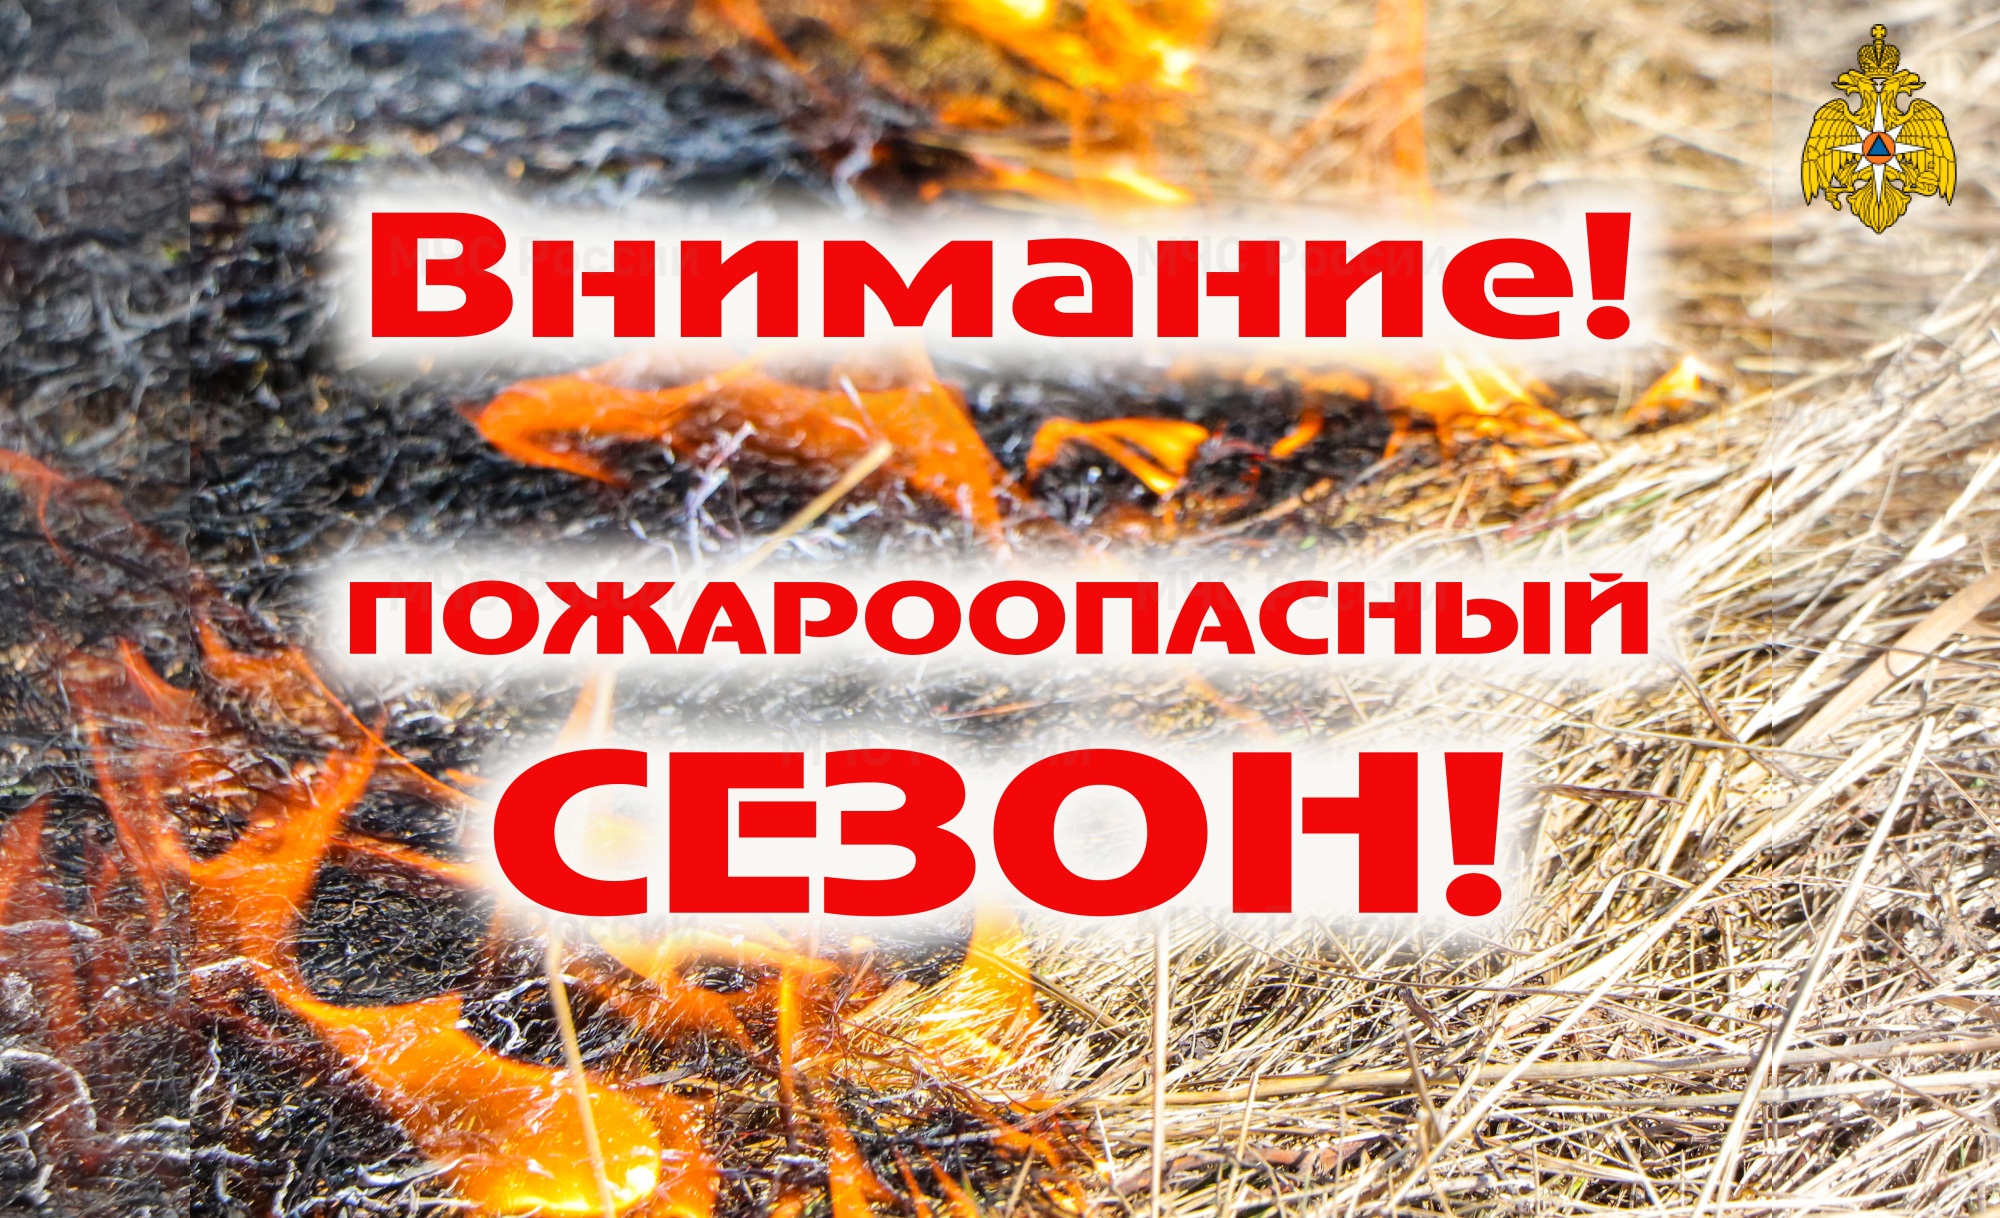 В Вологодской области стартовал пожароопасный сезон  .